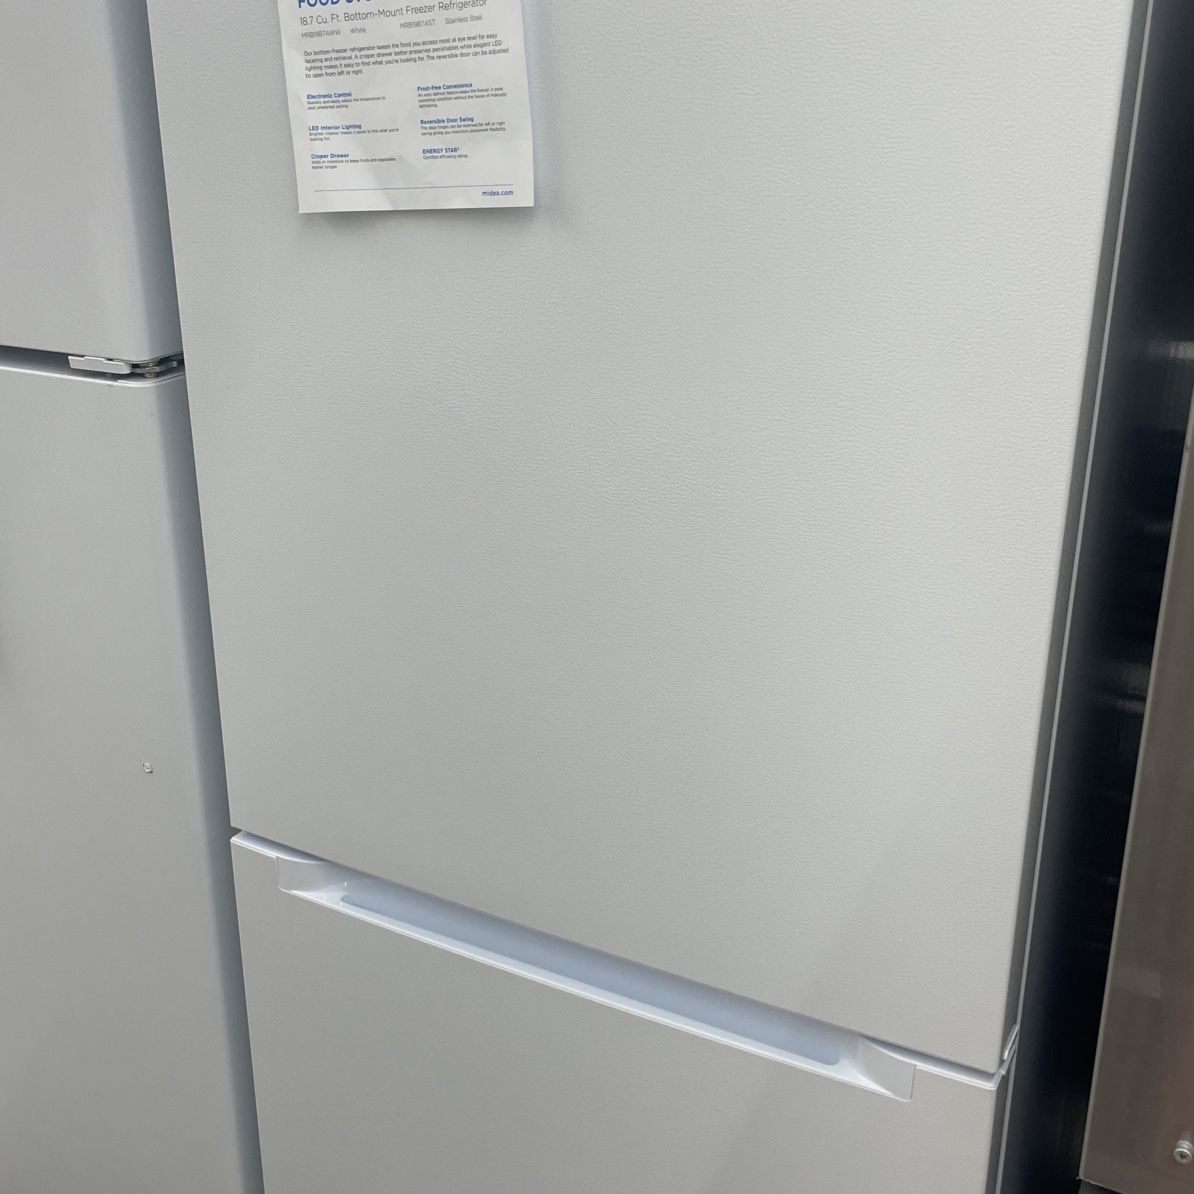 Refrigerator 30” Width 20 Cu Ft, Ice Maker 